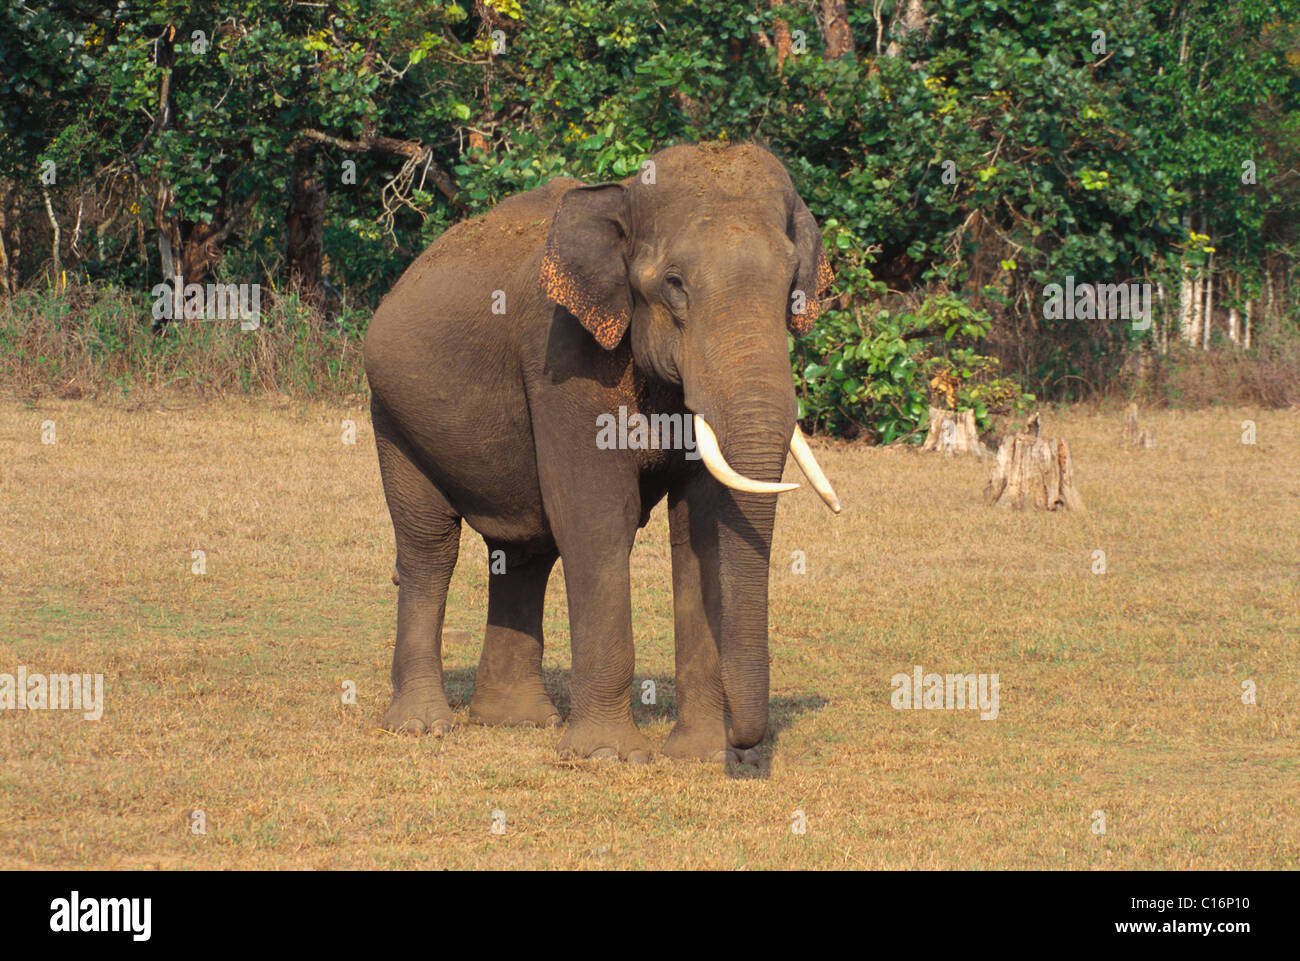 Indian elephant (Elephas maximus indicus) walking in a forest, Bandipur National Park, Chamarajanagar, Karnataka, India Stock Photo